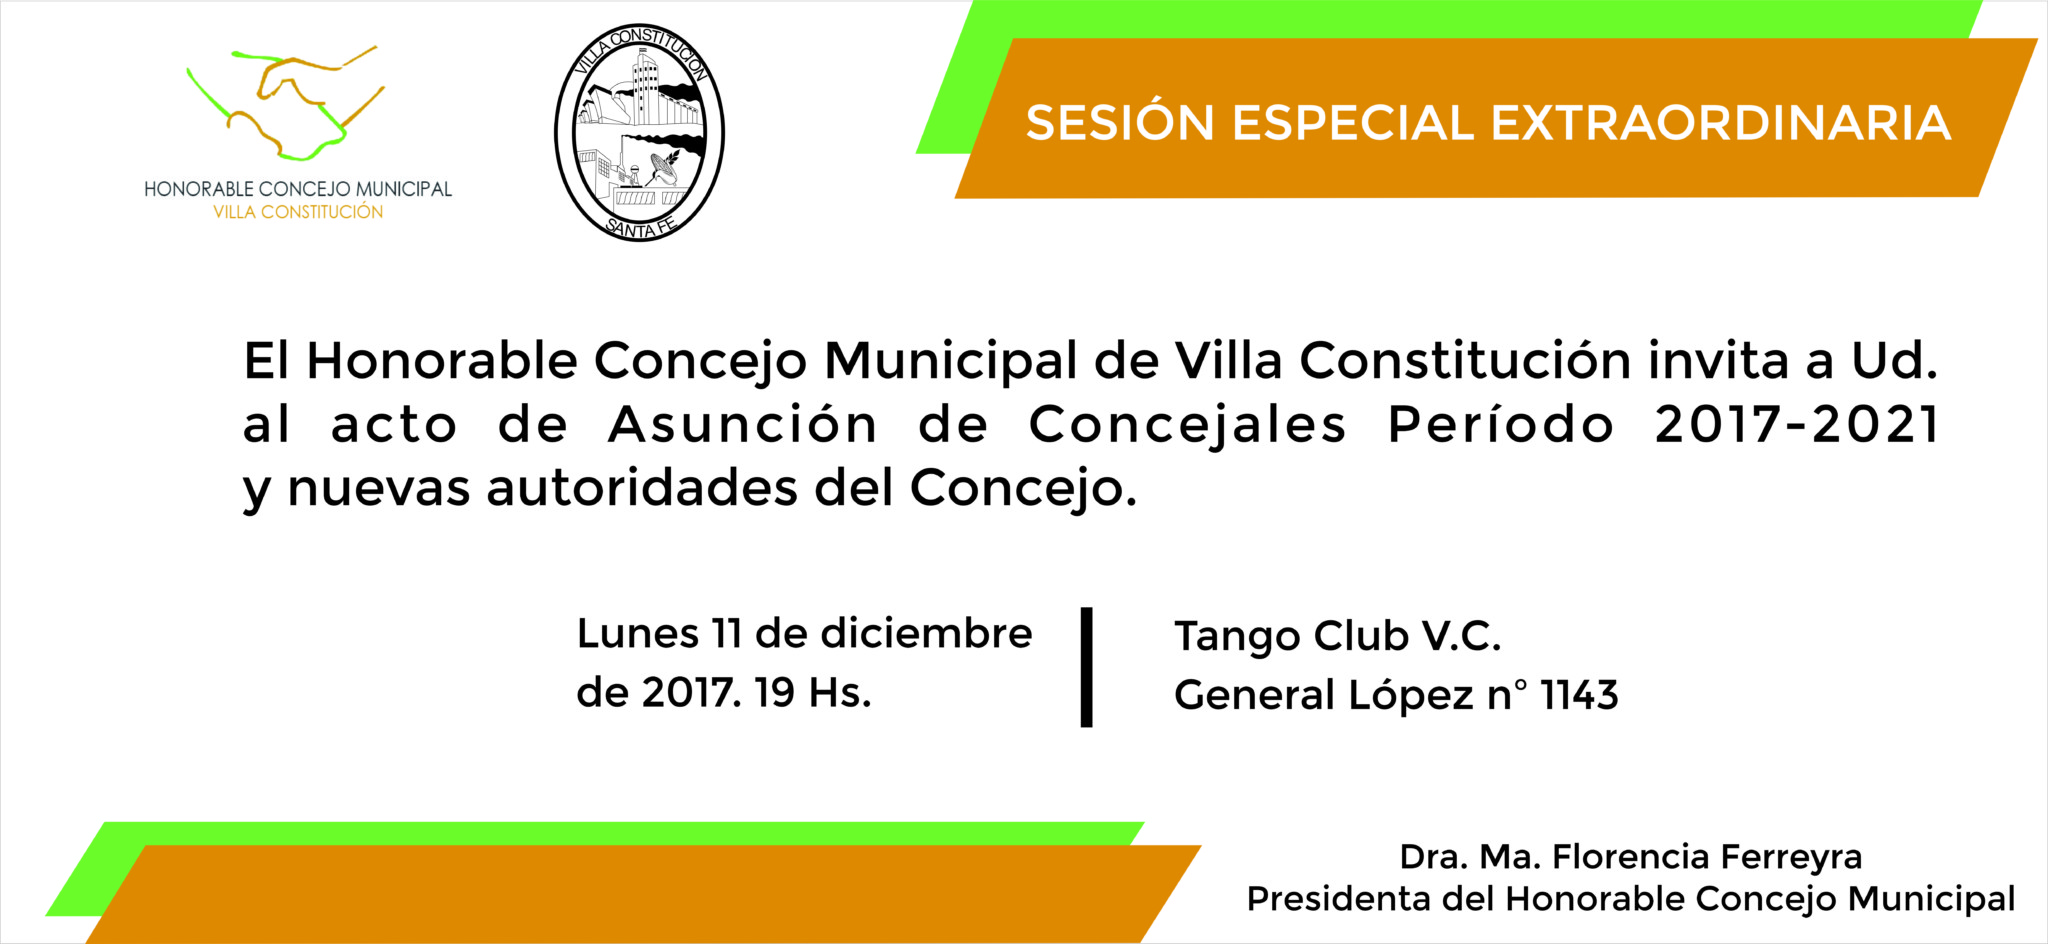 Sesión Extraordinaria – Asunción Nuevos Concejales Período 2017-2021